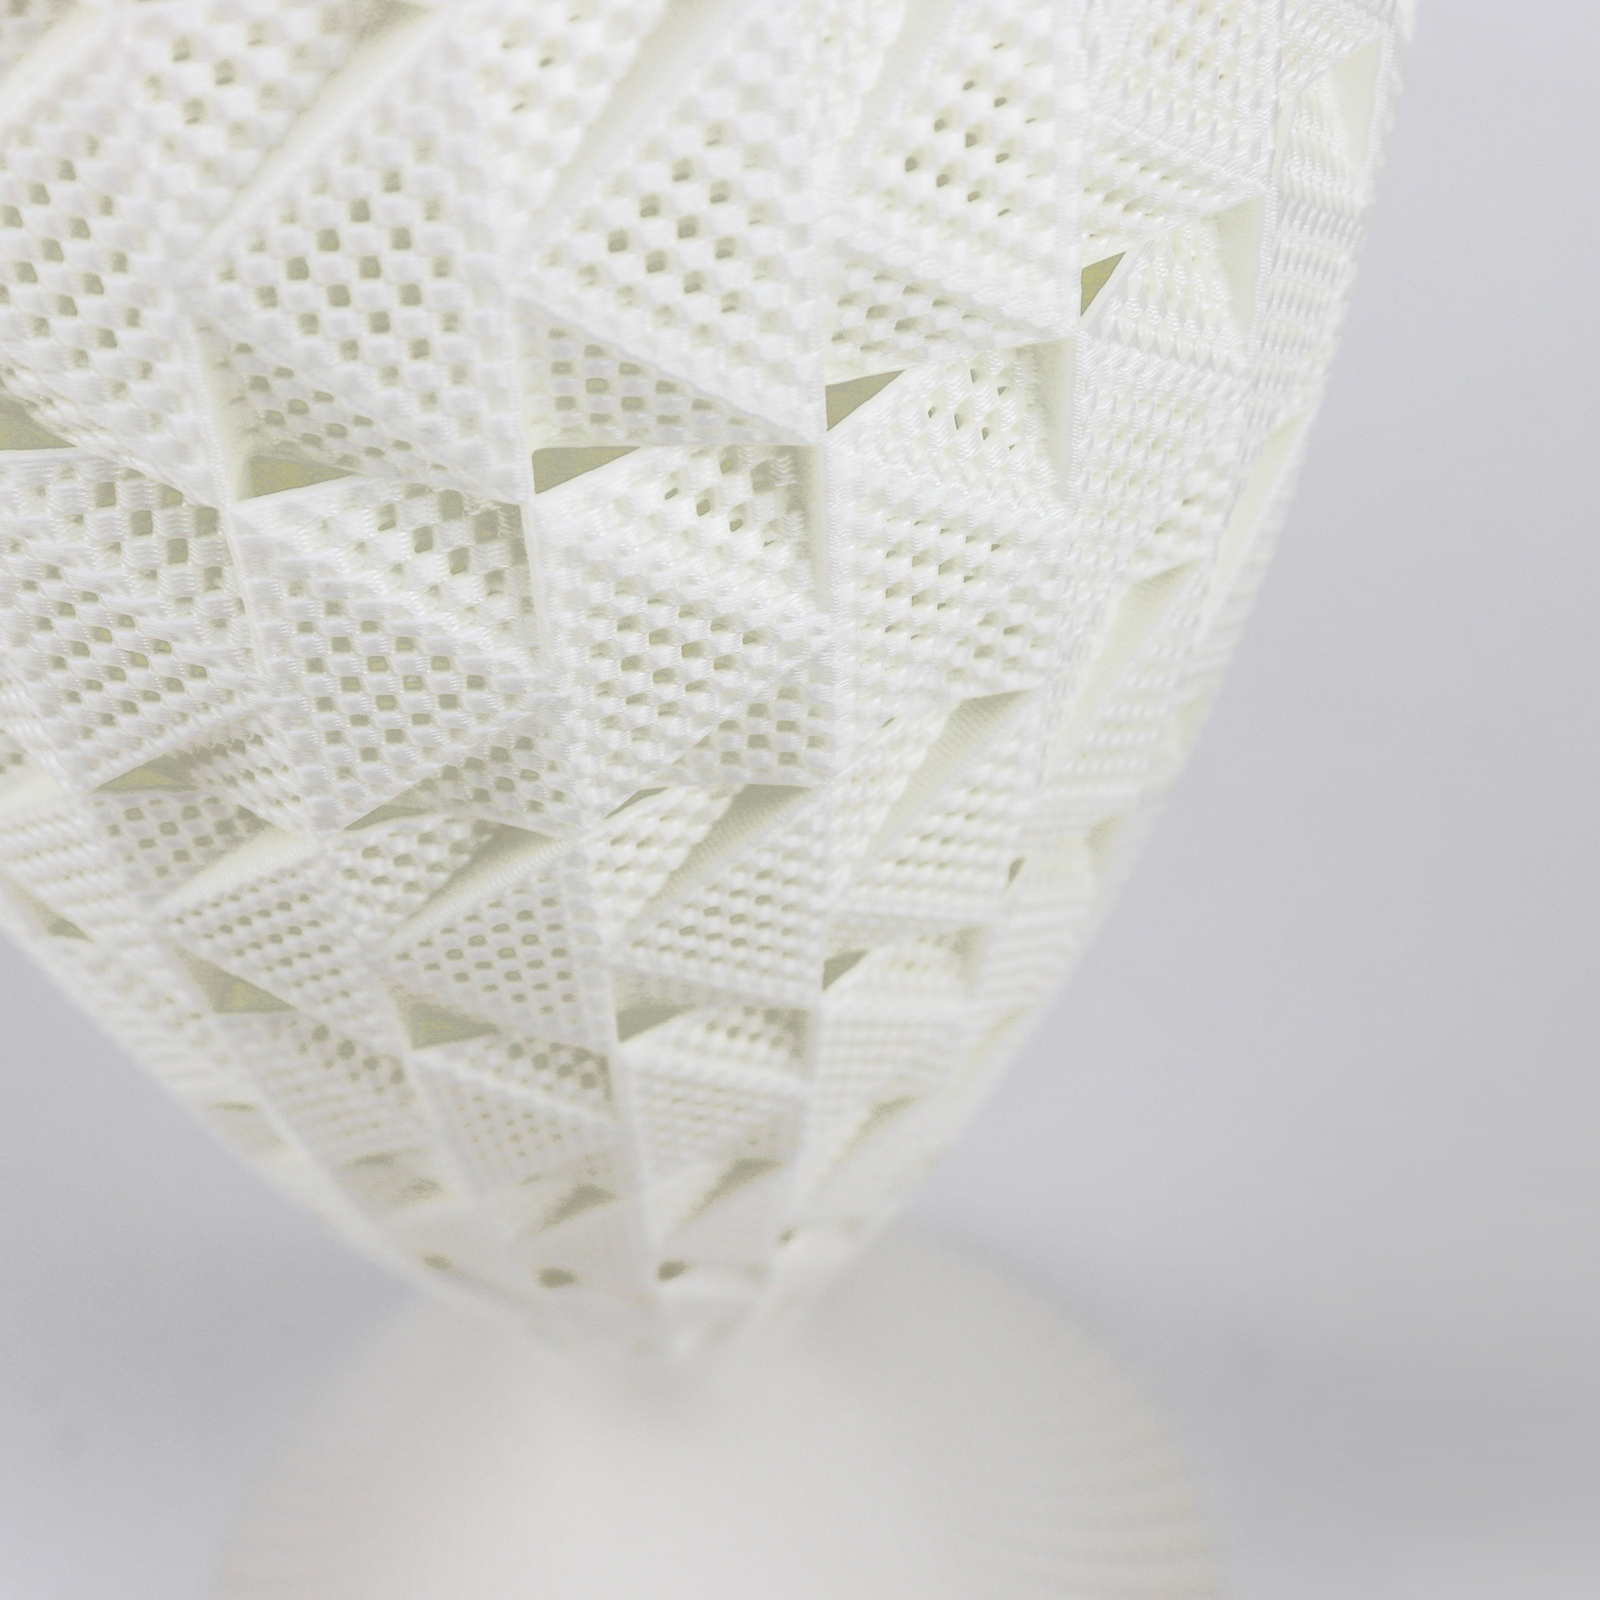 Fraktal table lamp made of biomaterial, silk, 33 cm